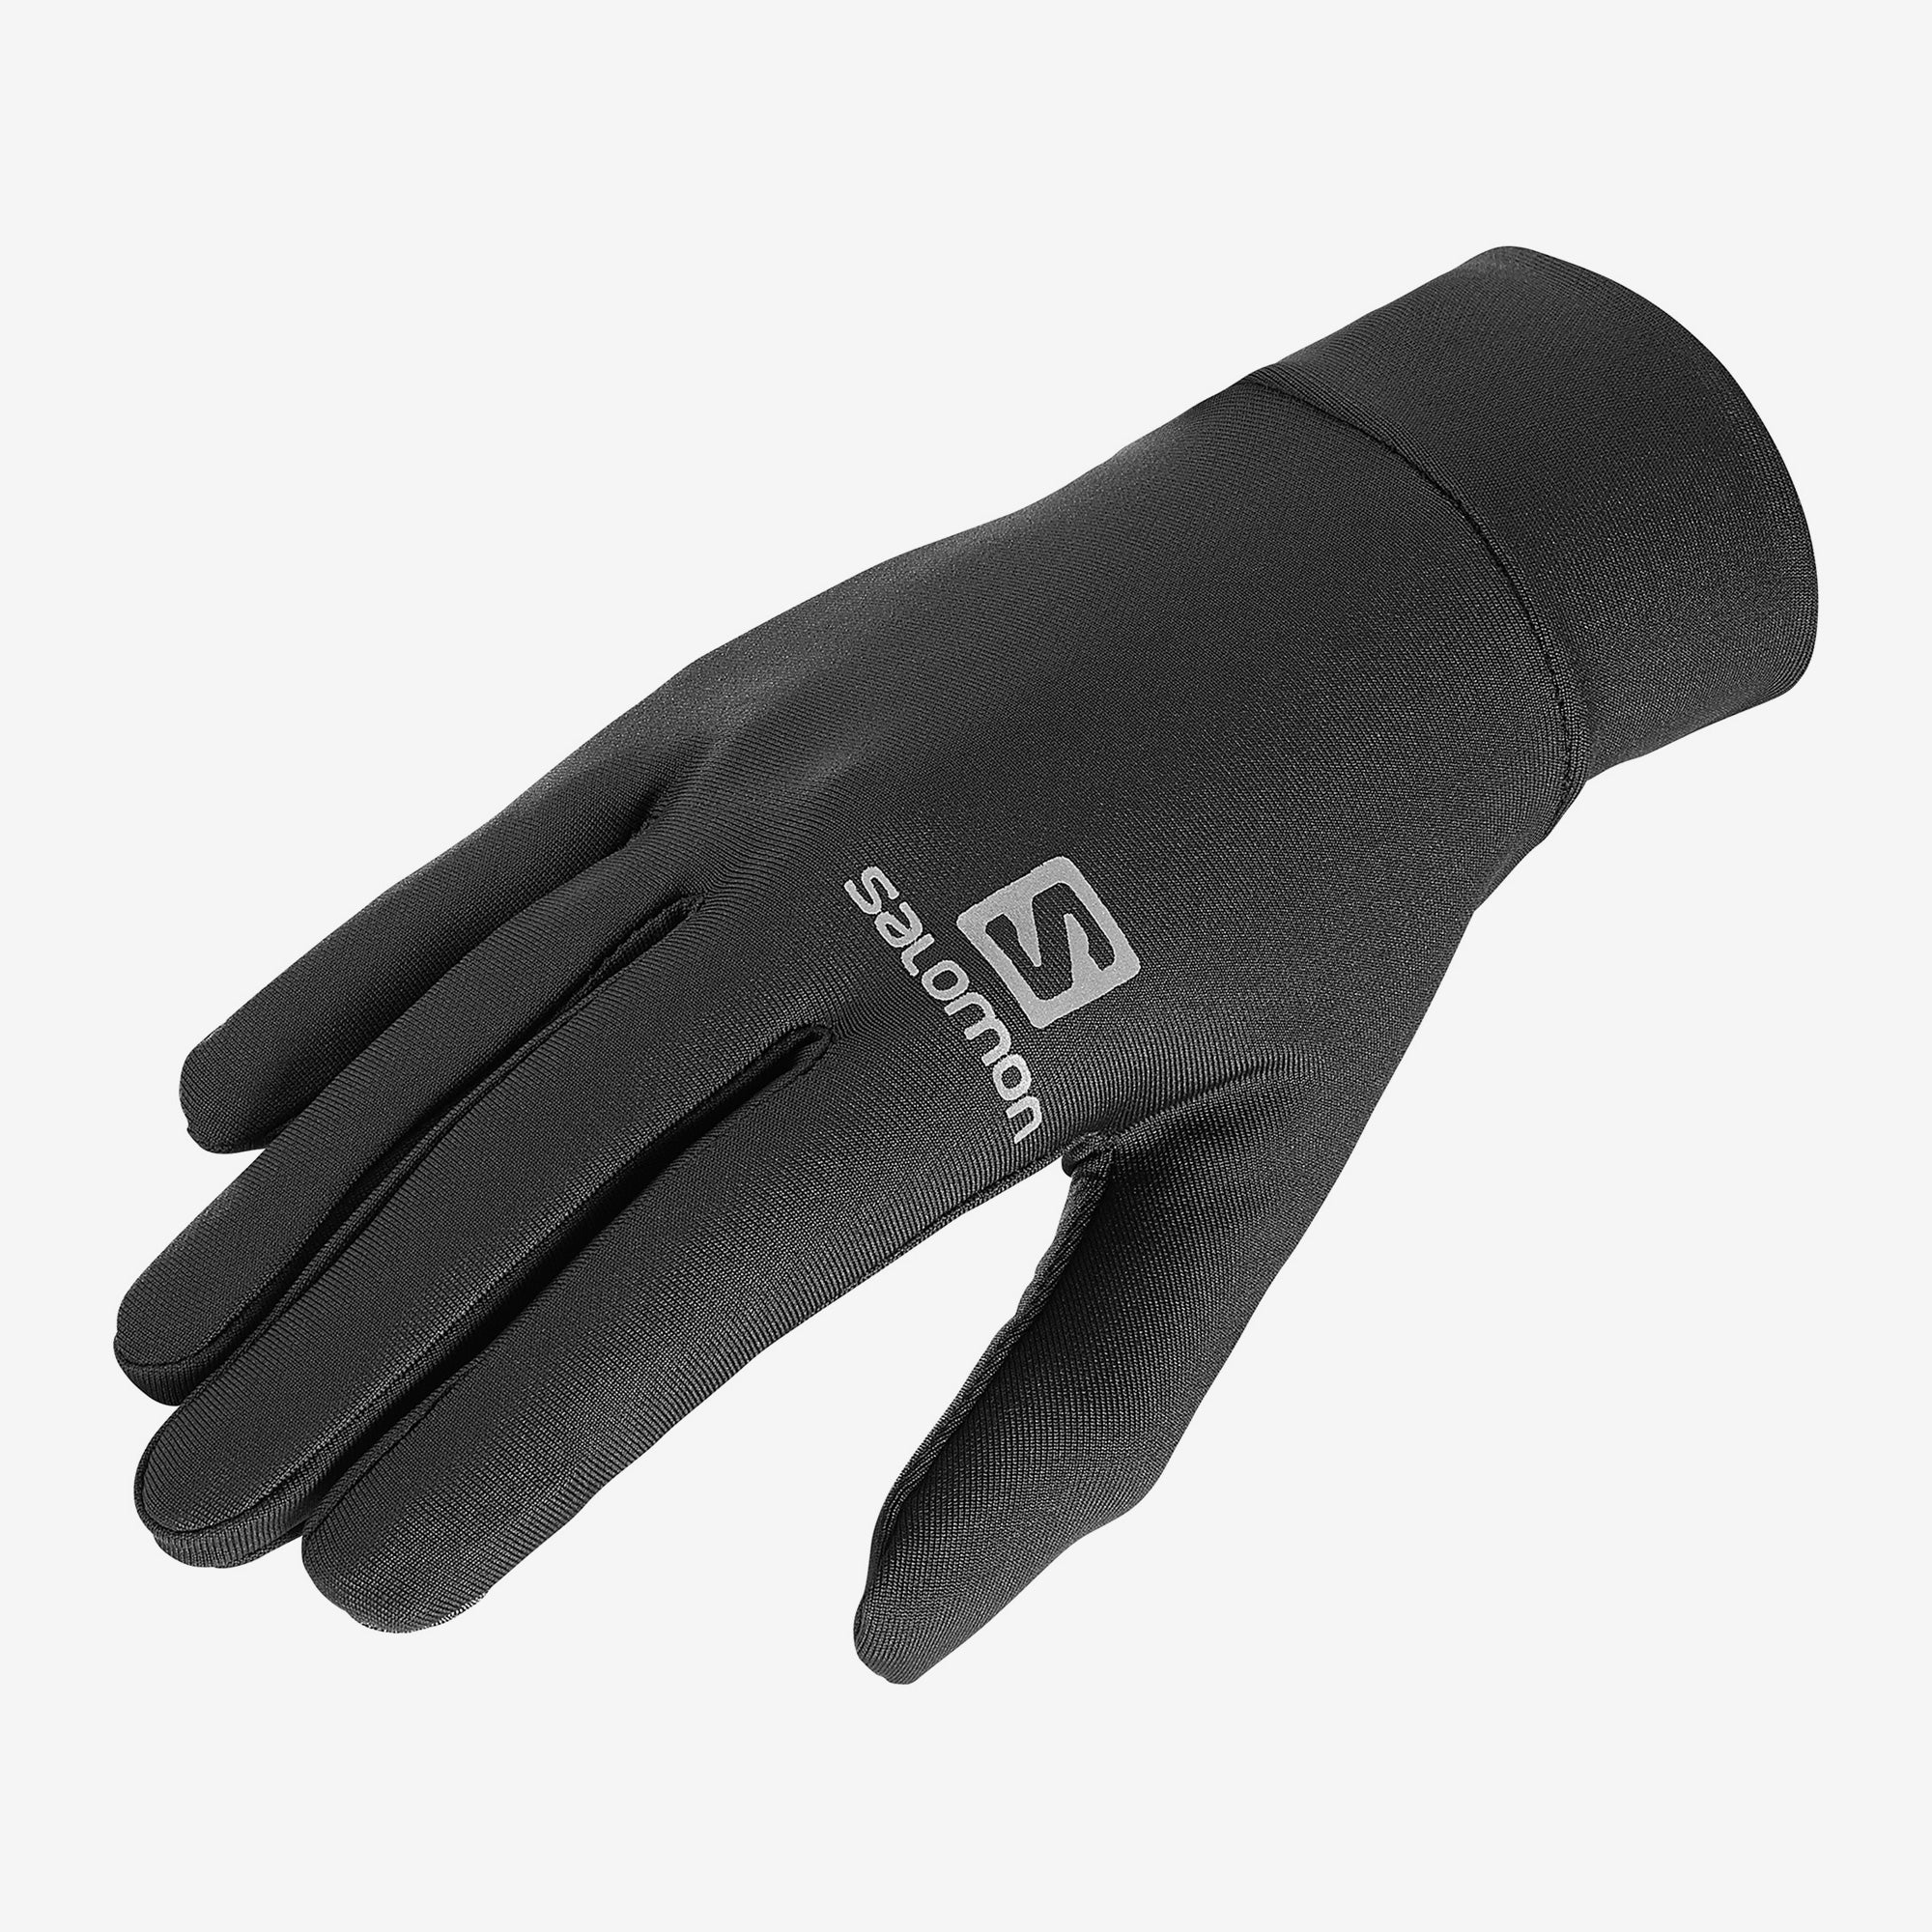 SALOMON Agile Warm Gloves - Unisex